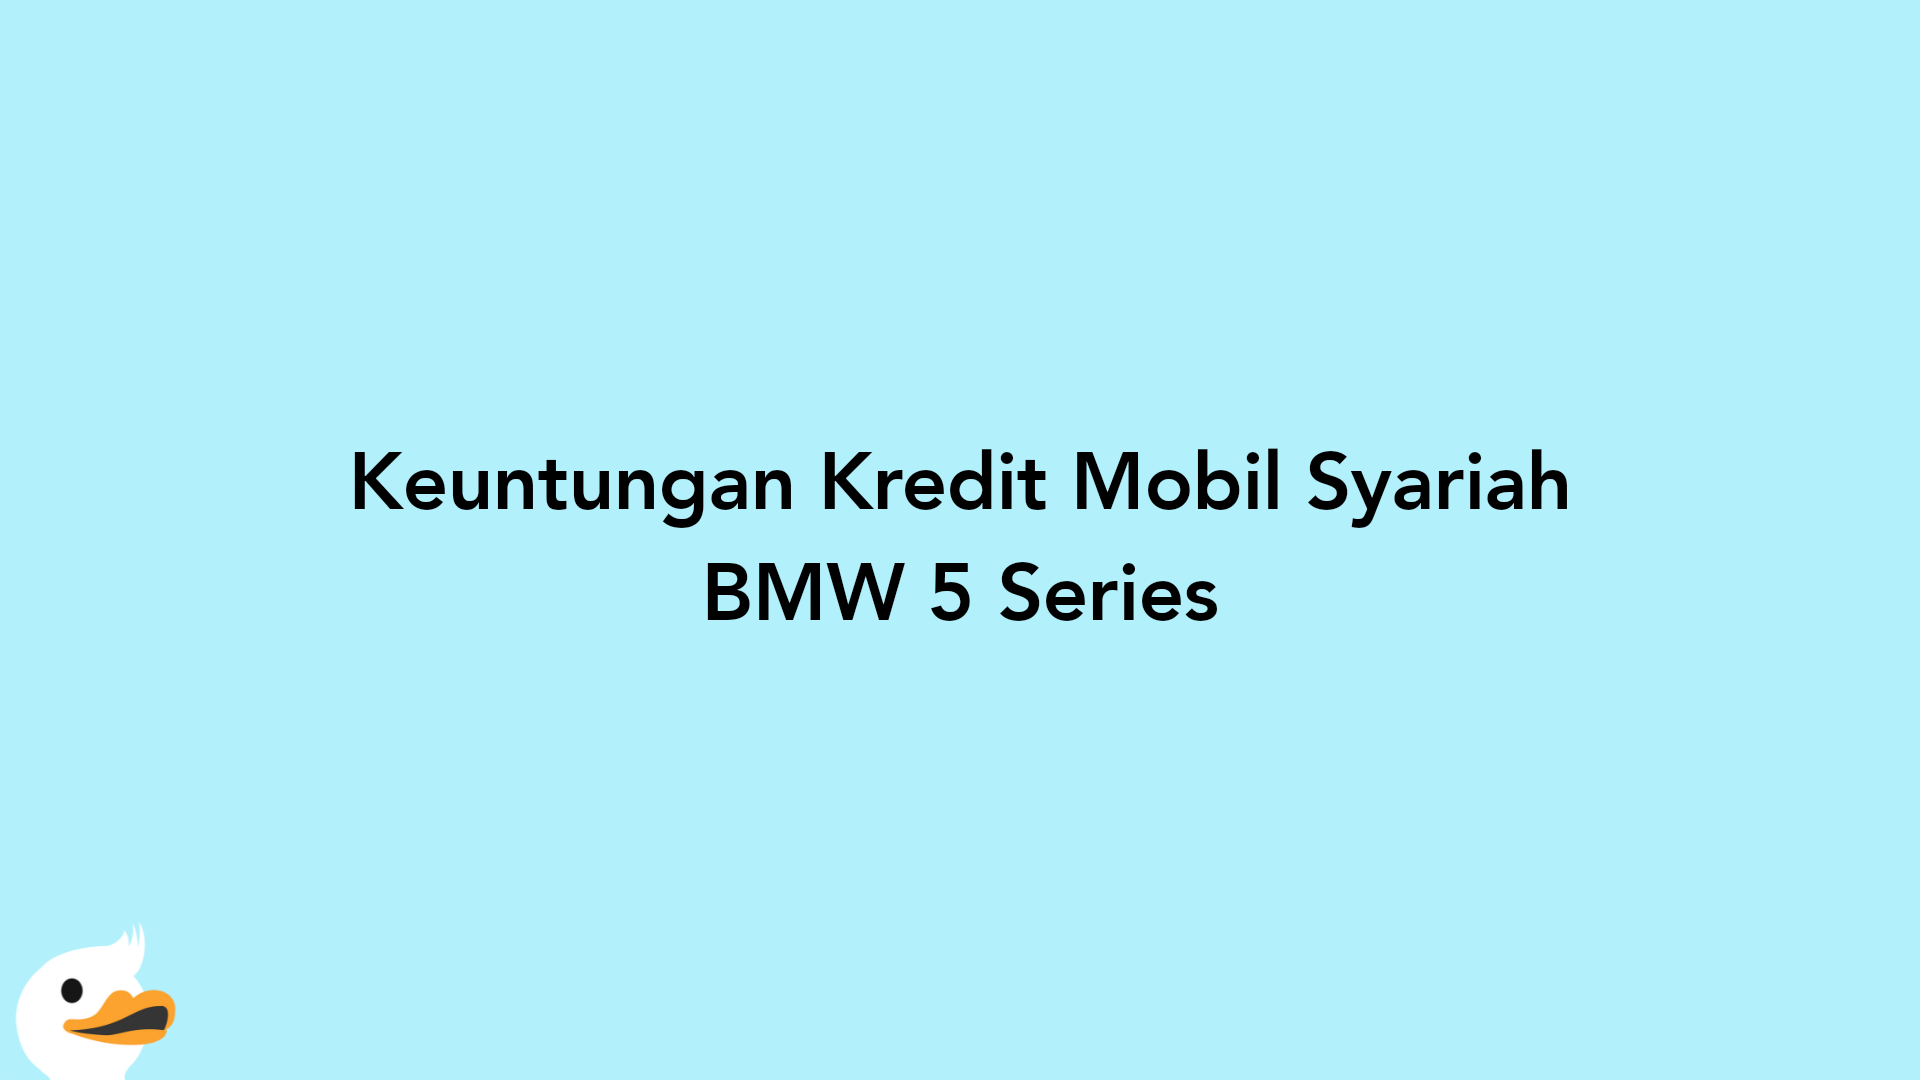 Keuntungan Kredit Mobil Syariah BMW 5 Series